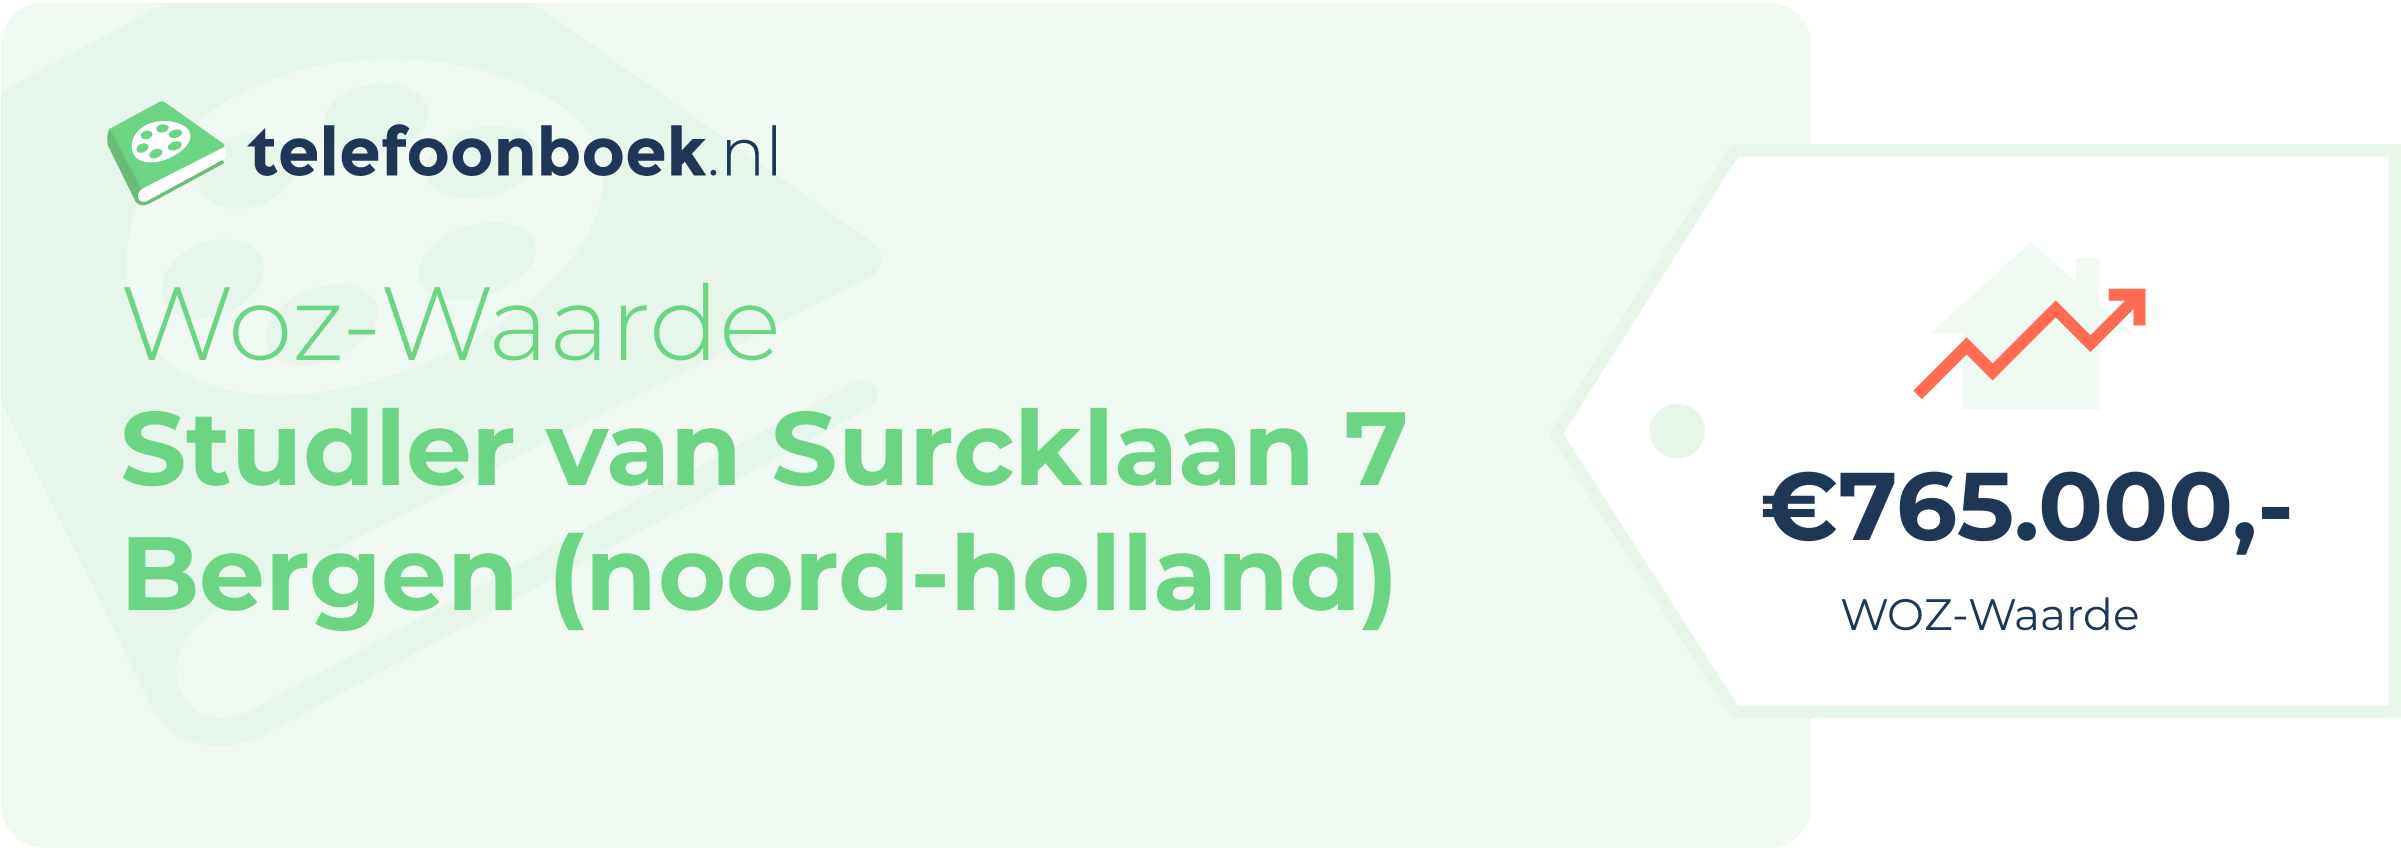 WOZ-waarde Studler Van Surcklaan 7 Bergen (Noord-Holland)